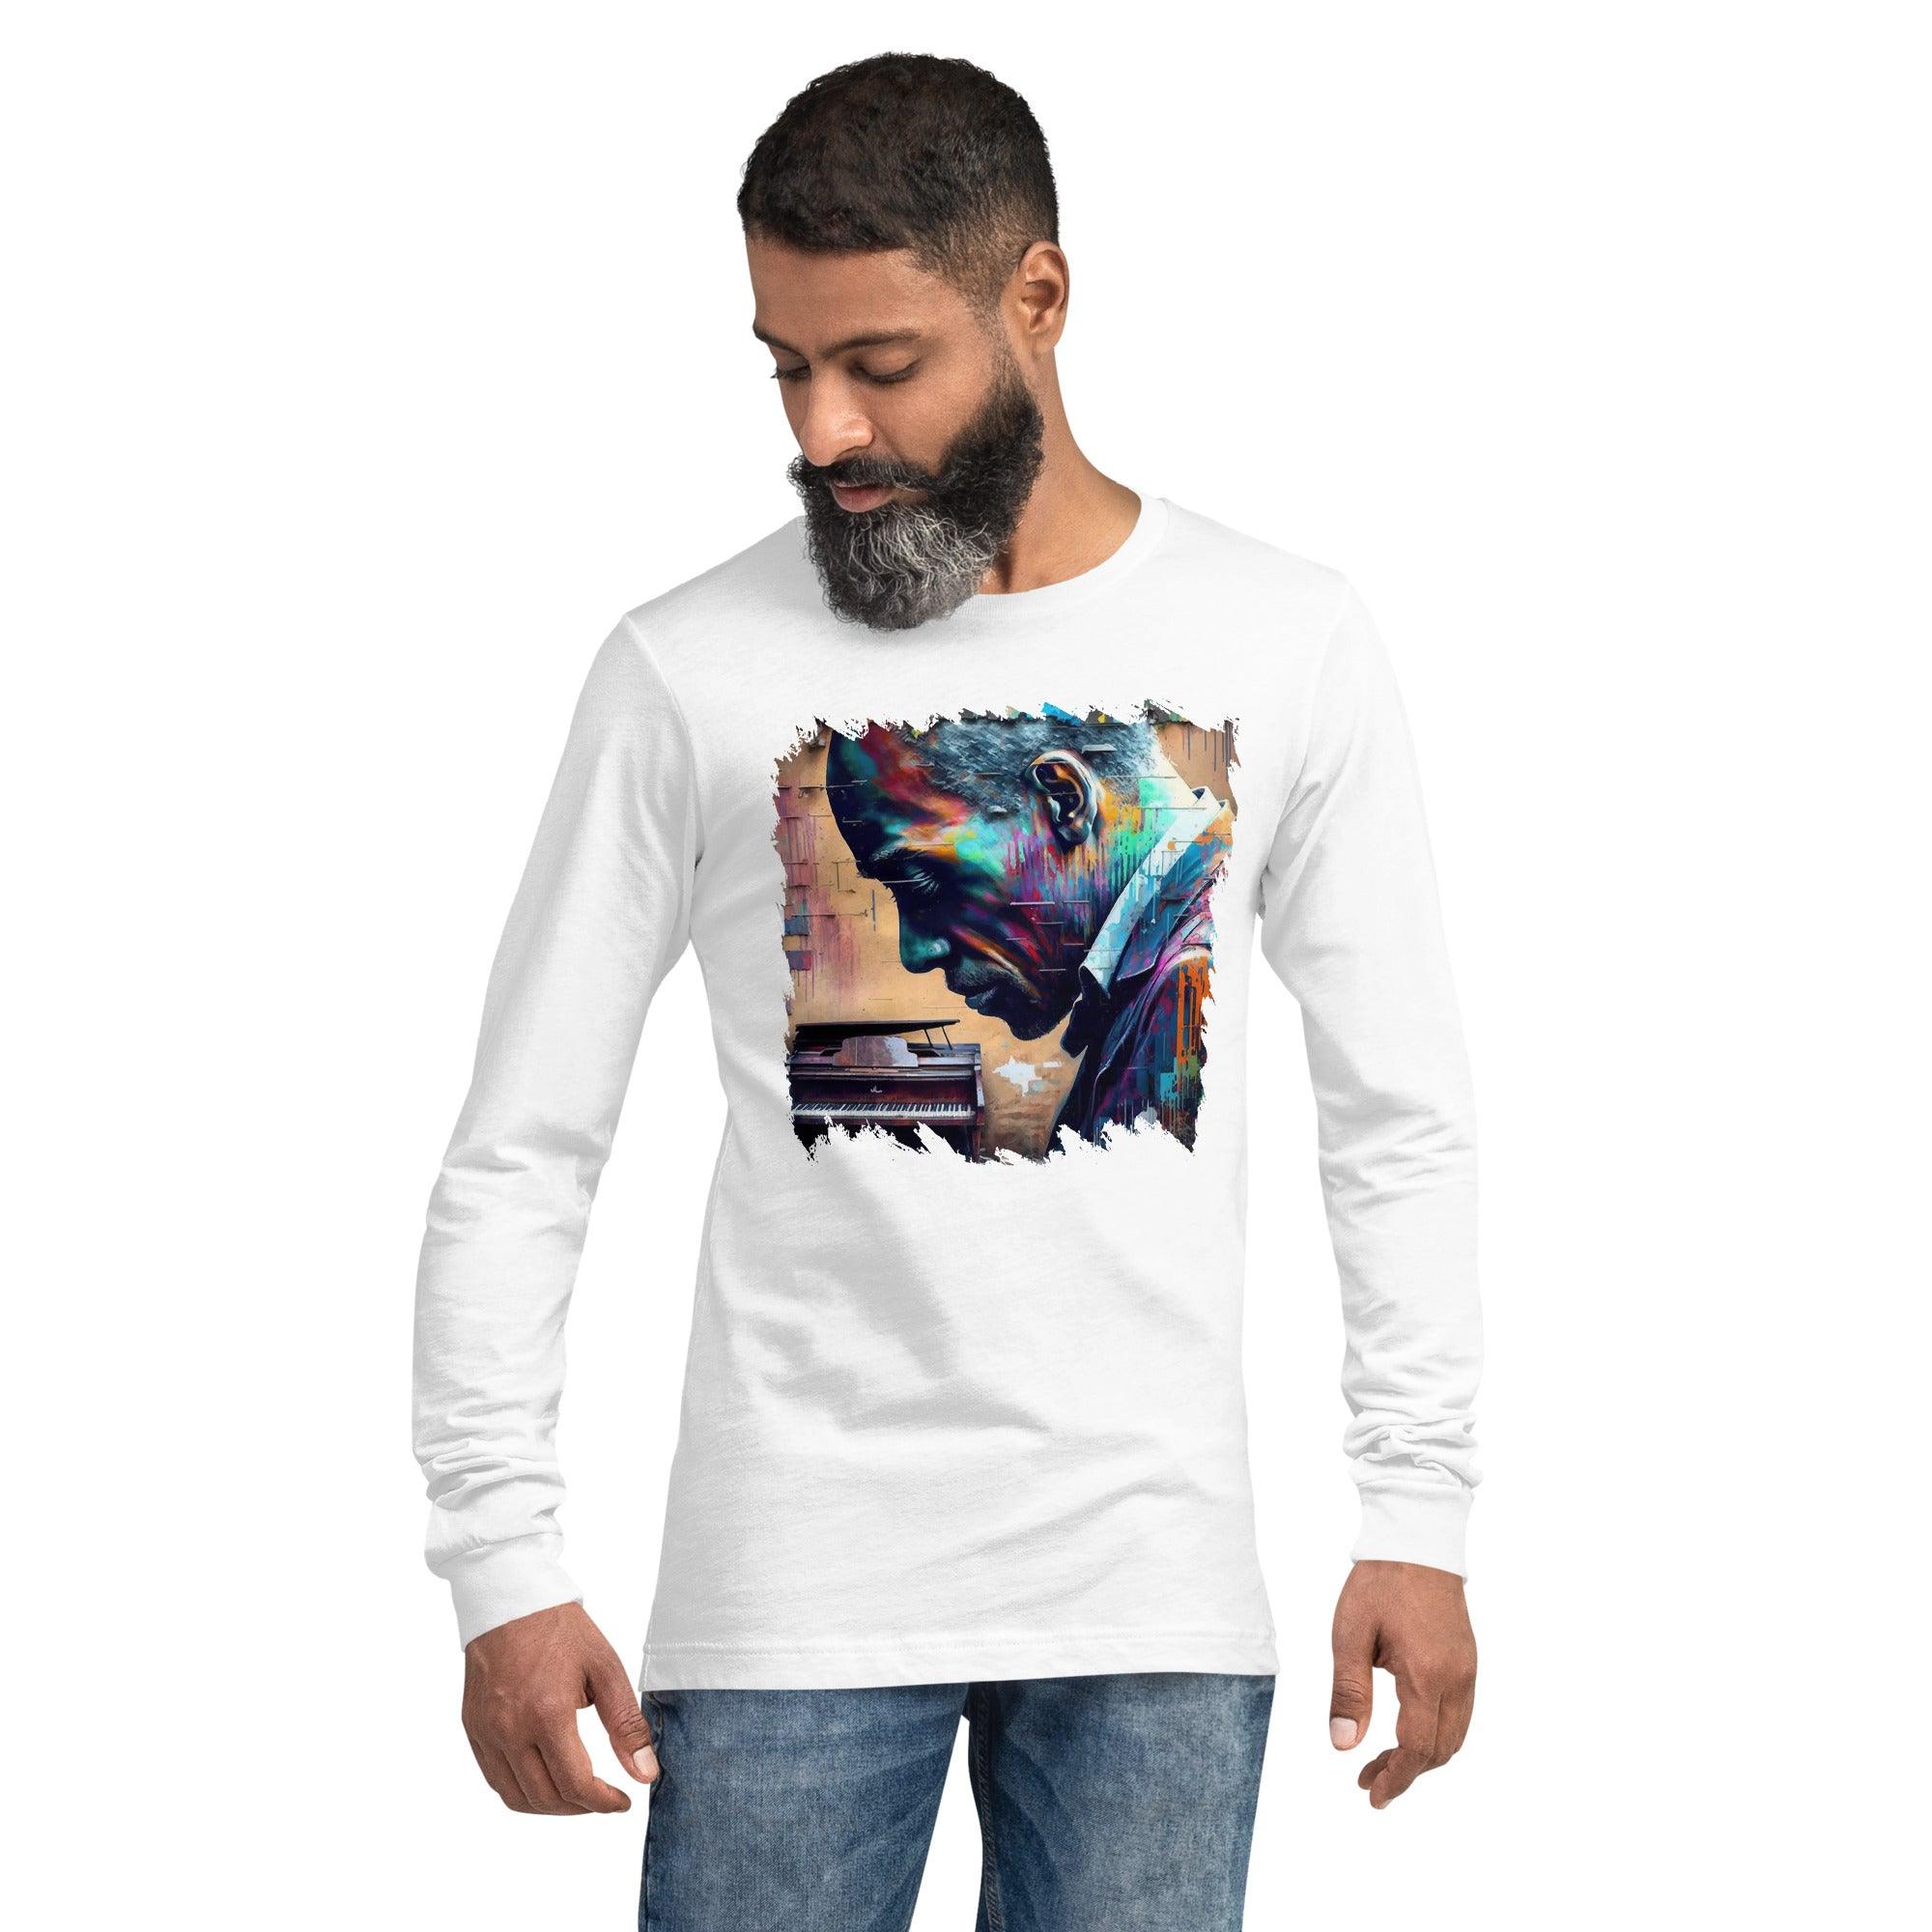 Groovin' On The Keys Unisex Long Sleeve Tee - Beyond T-shirts